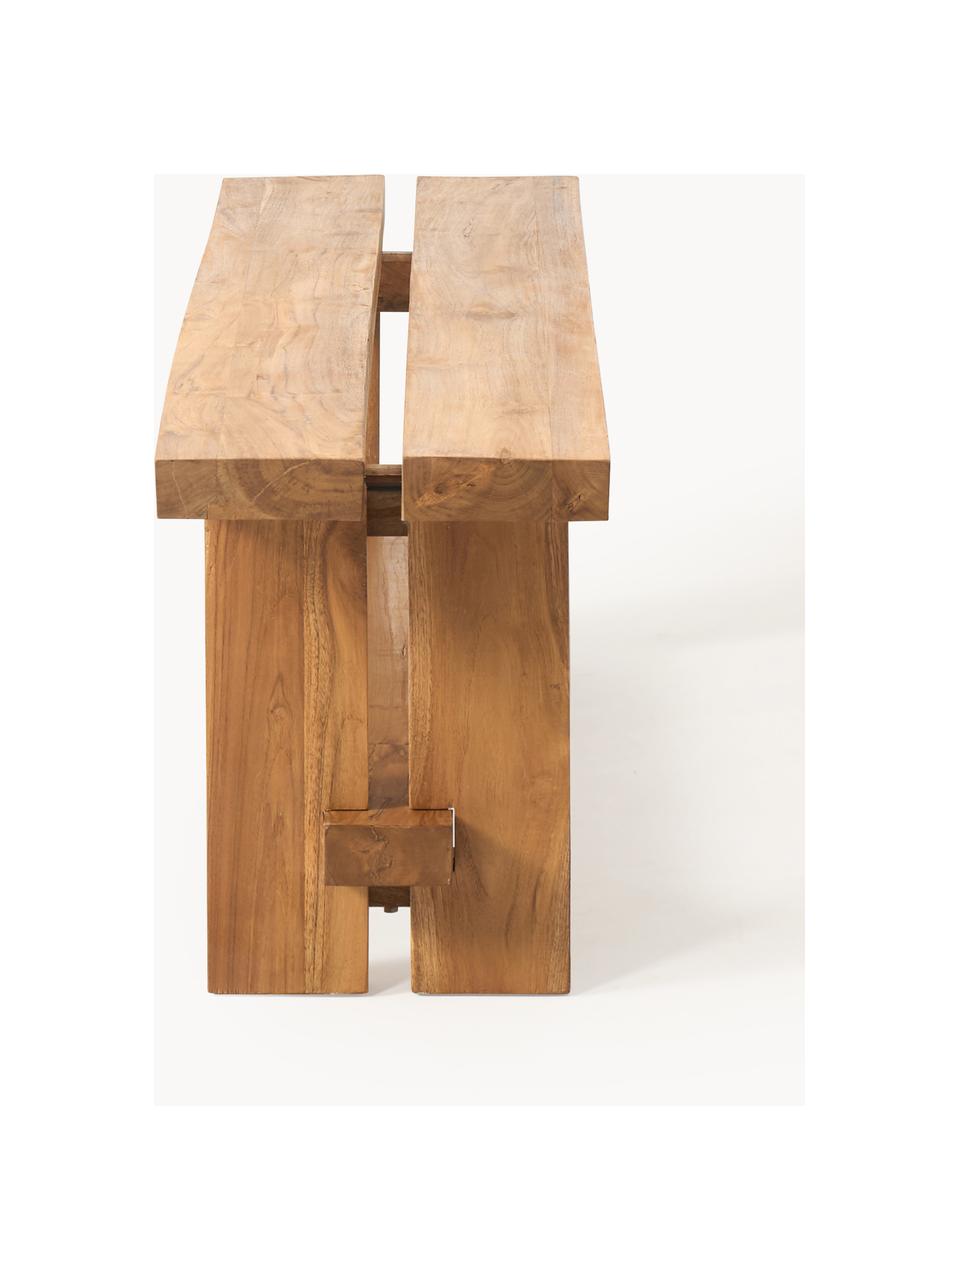 Sitzbank Hugo aus Teakholz, verschiedene Grössen, Teakholz, gebeizt

Dieses Produkt wird aus nachhaltig gewonnenem, FSC®-zertifiziertem Holz gefertigt., Teakholz, gebeizt, B 160 x T 35 cm